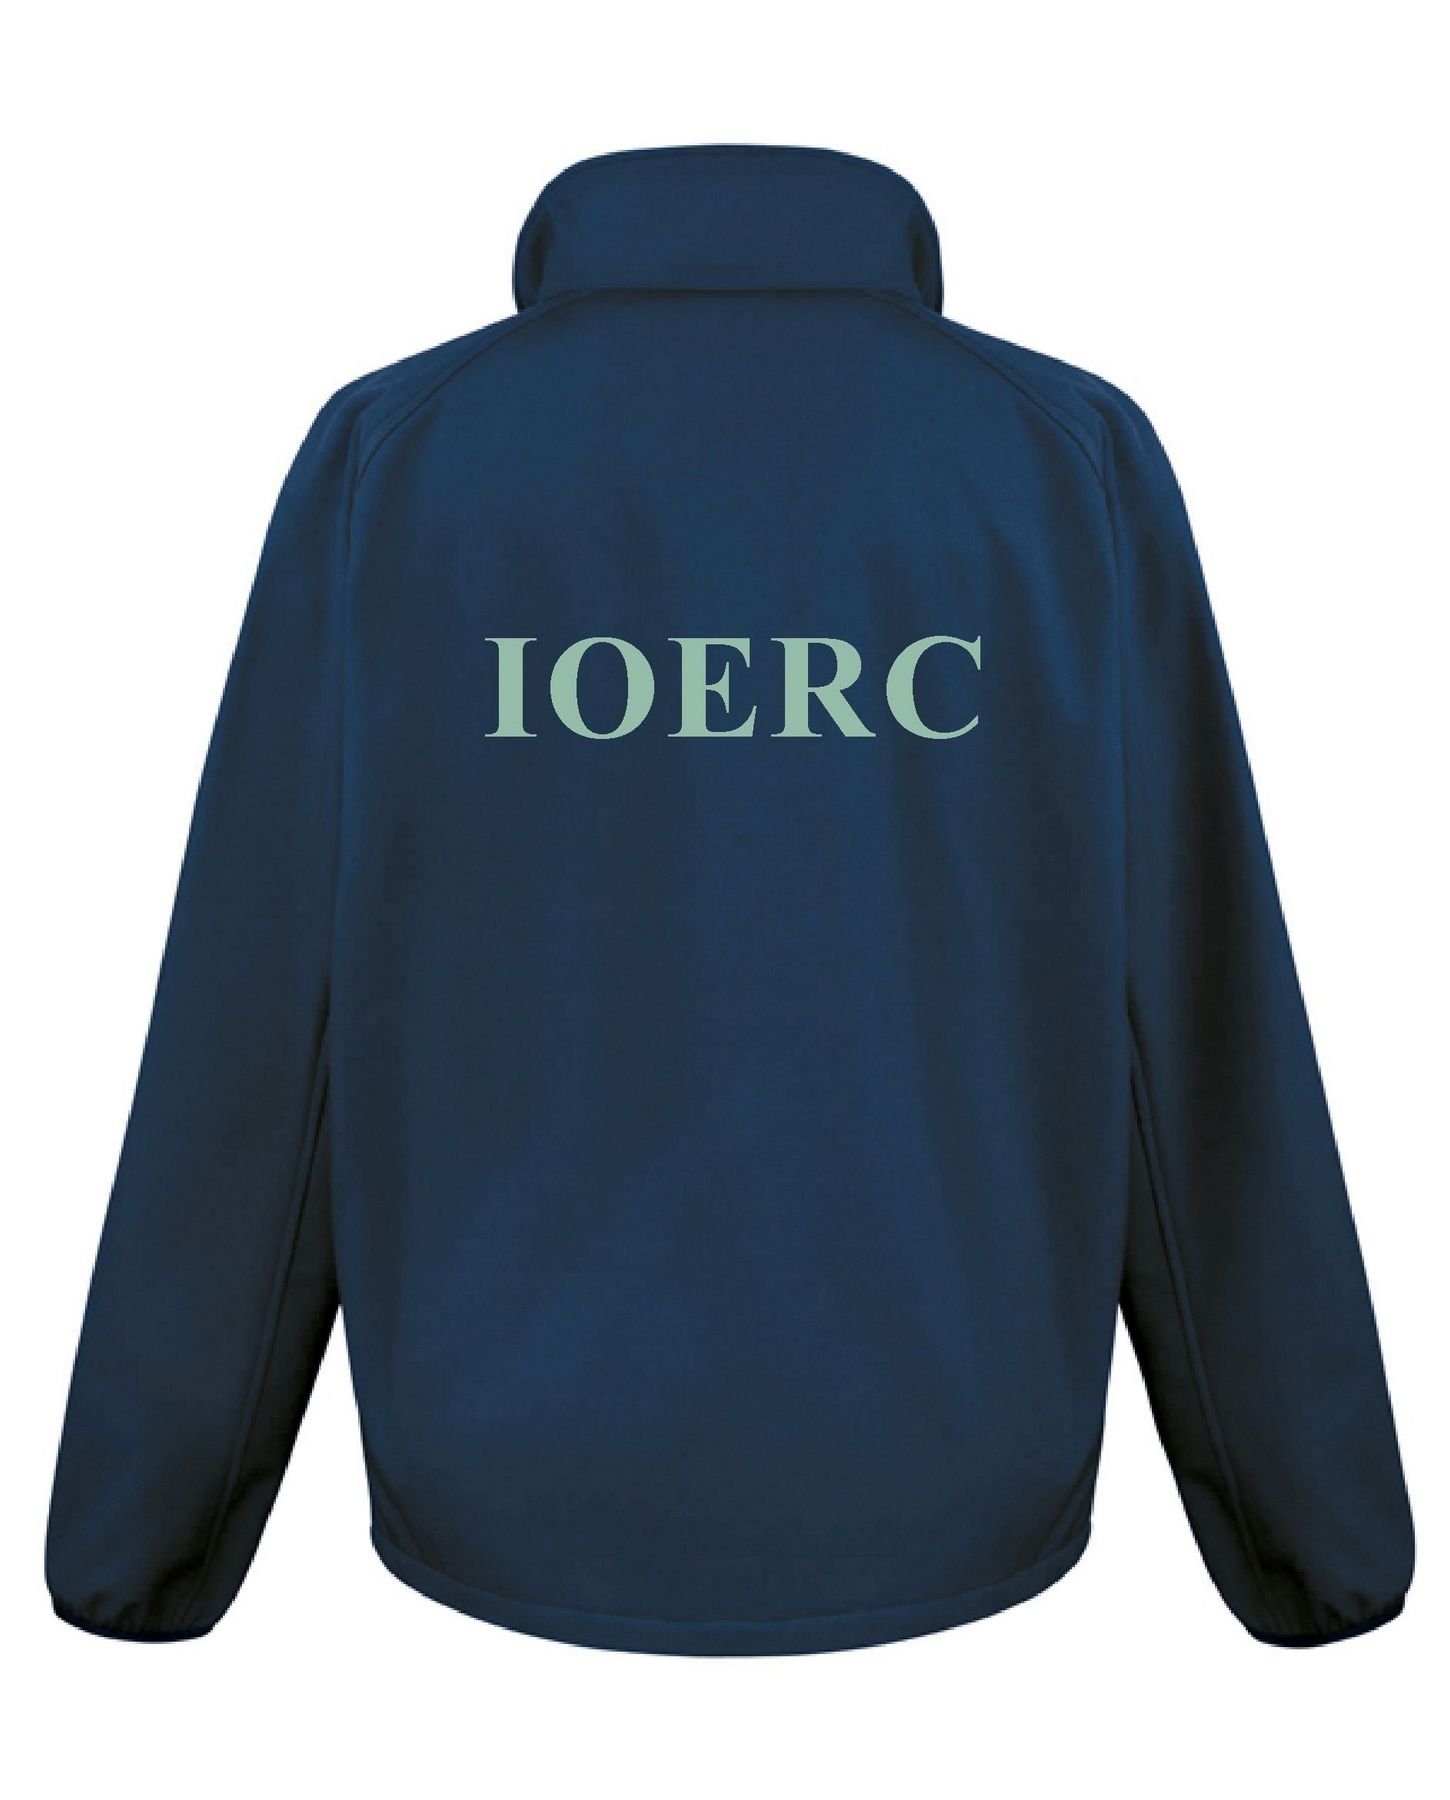 IOERC – Softshell Jacket (Ladies)